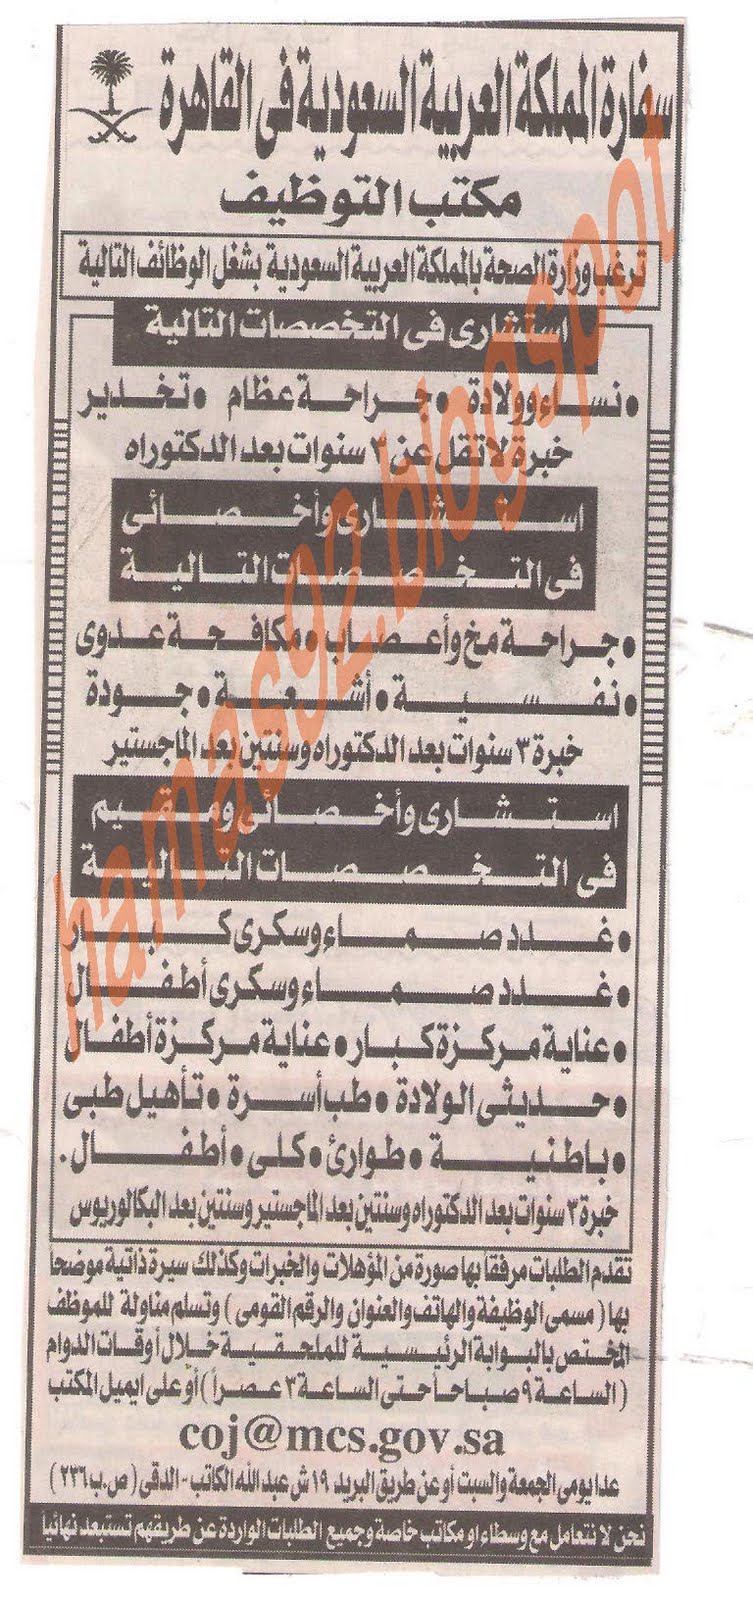 وظائف السفارة السعودية فى القاهرة - وظائف للاطباء المصريين فى السعودية Picture+003